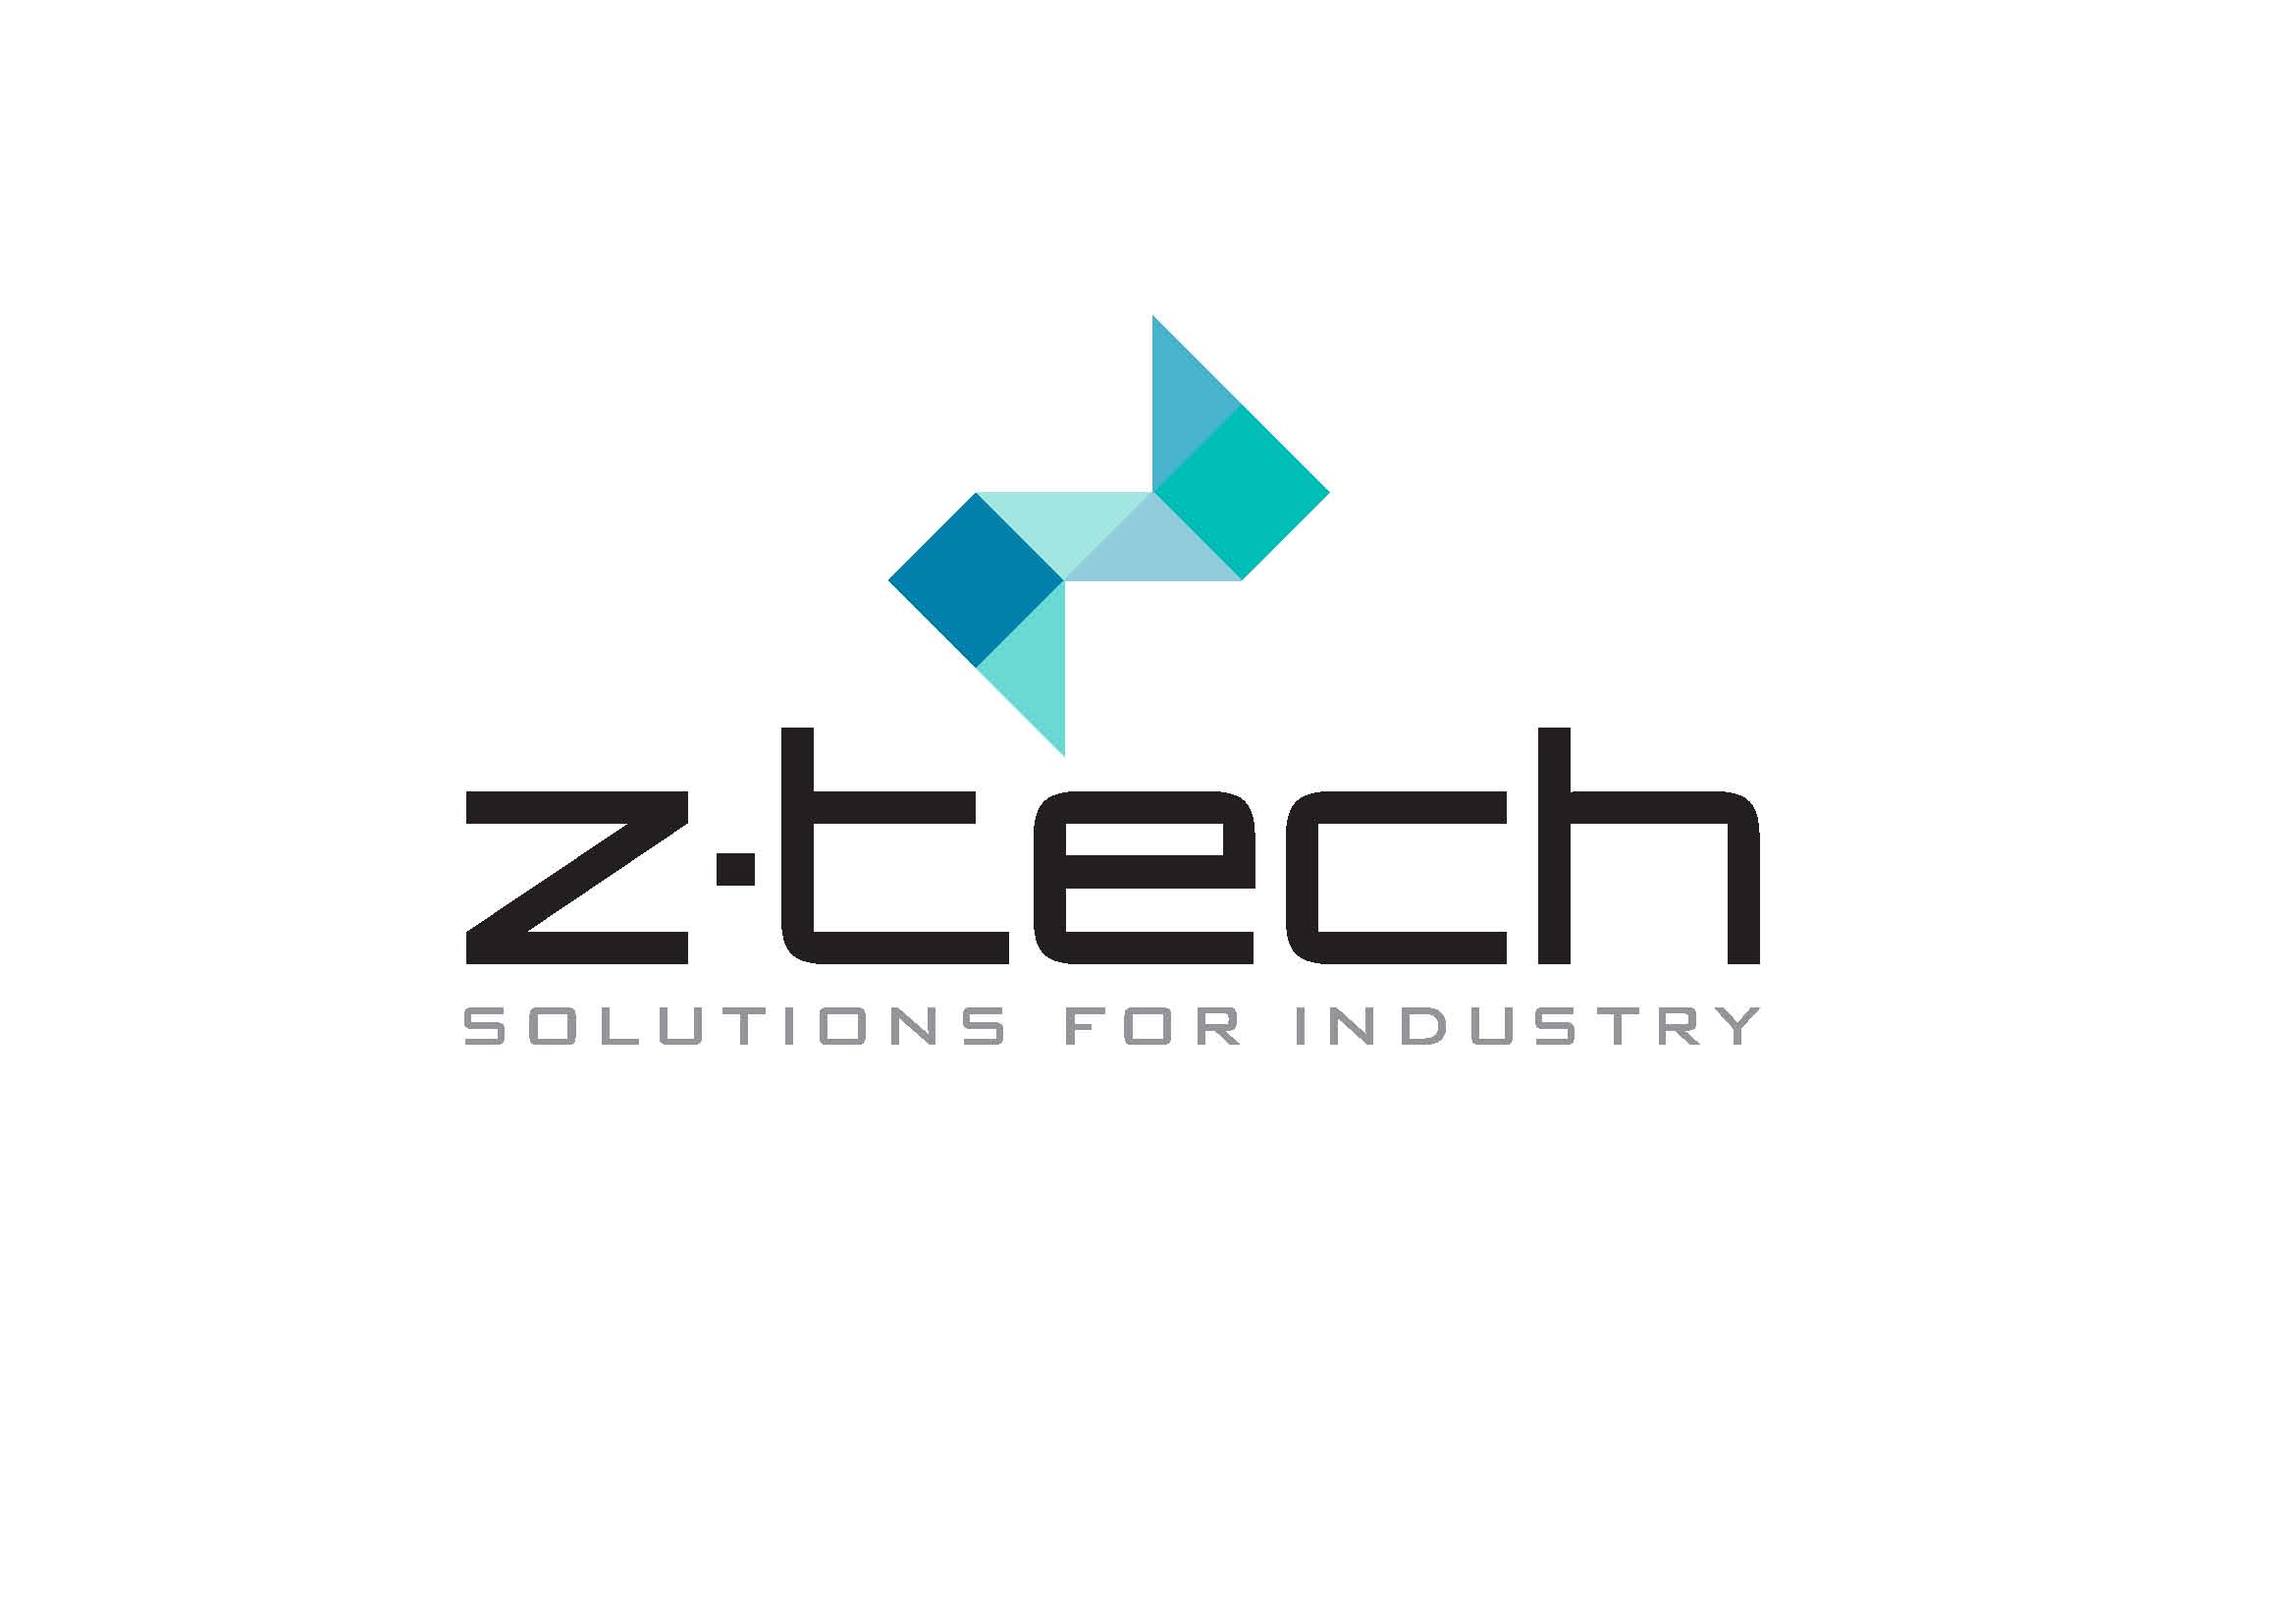 ztech_logo_final.jpg